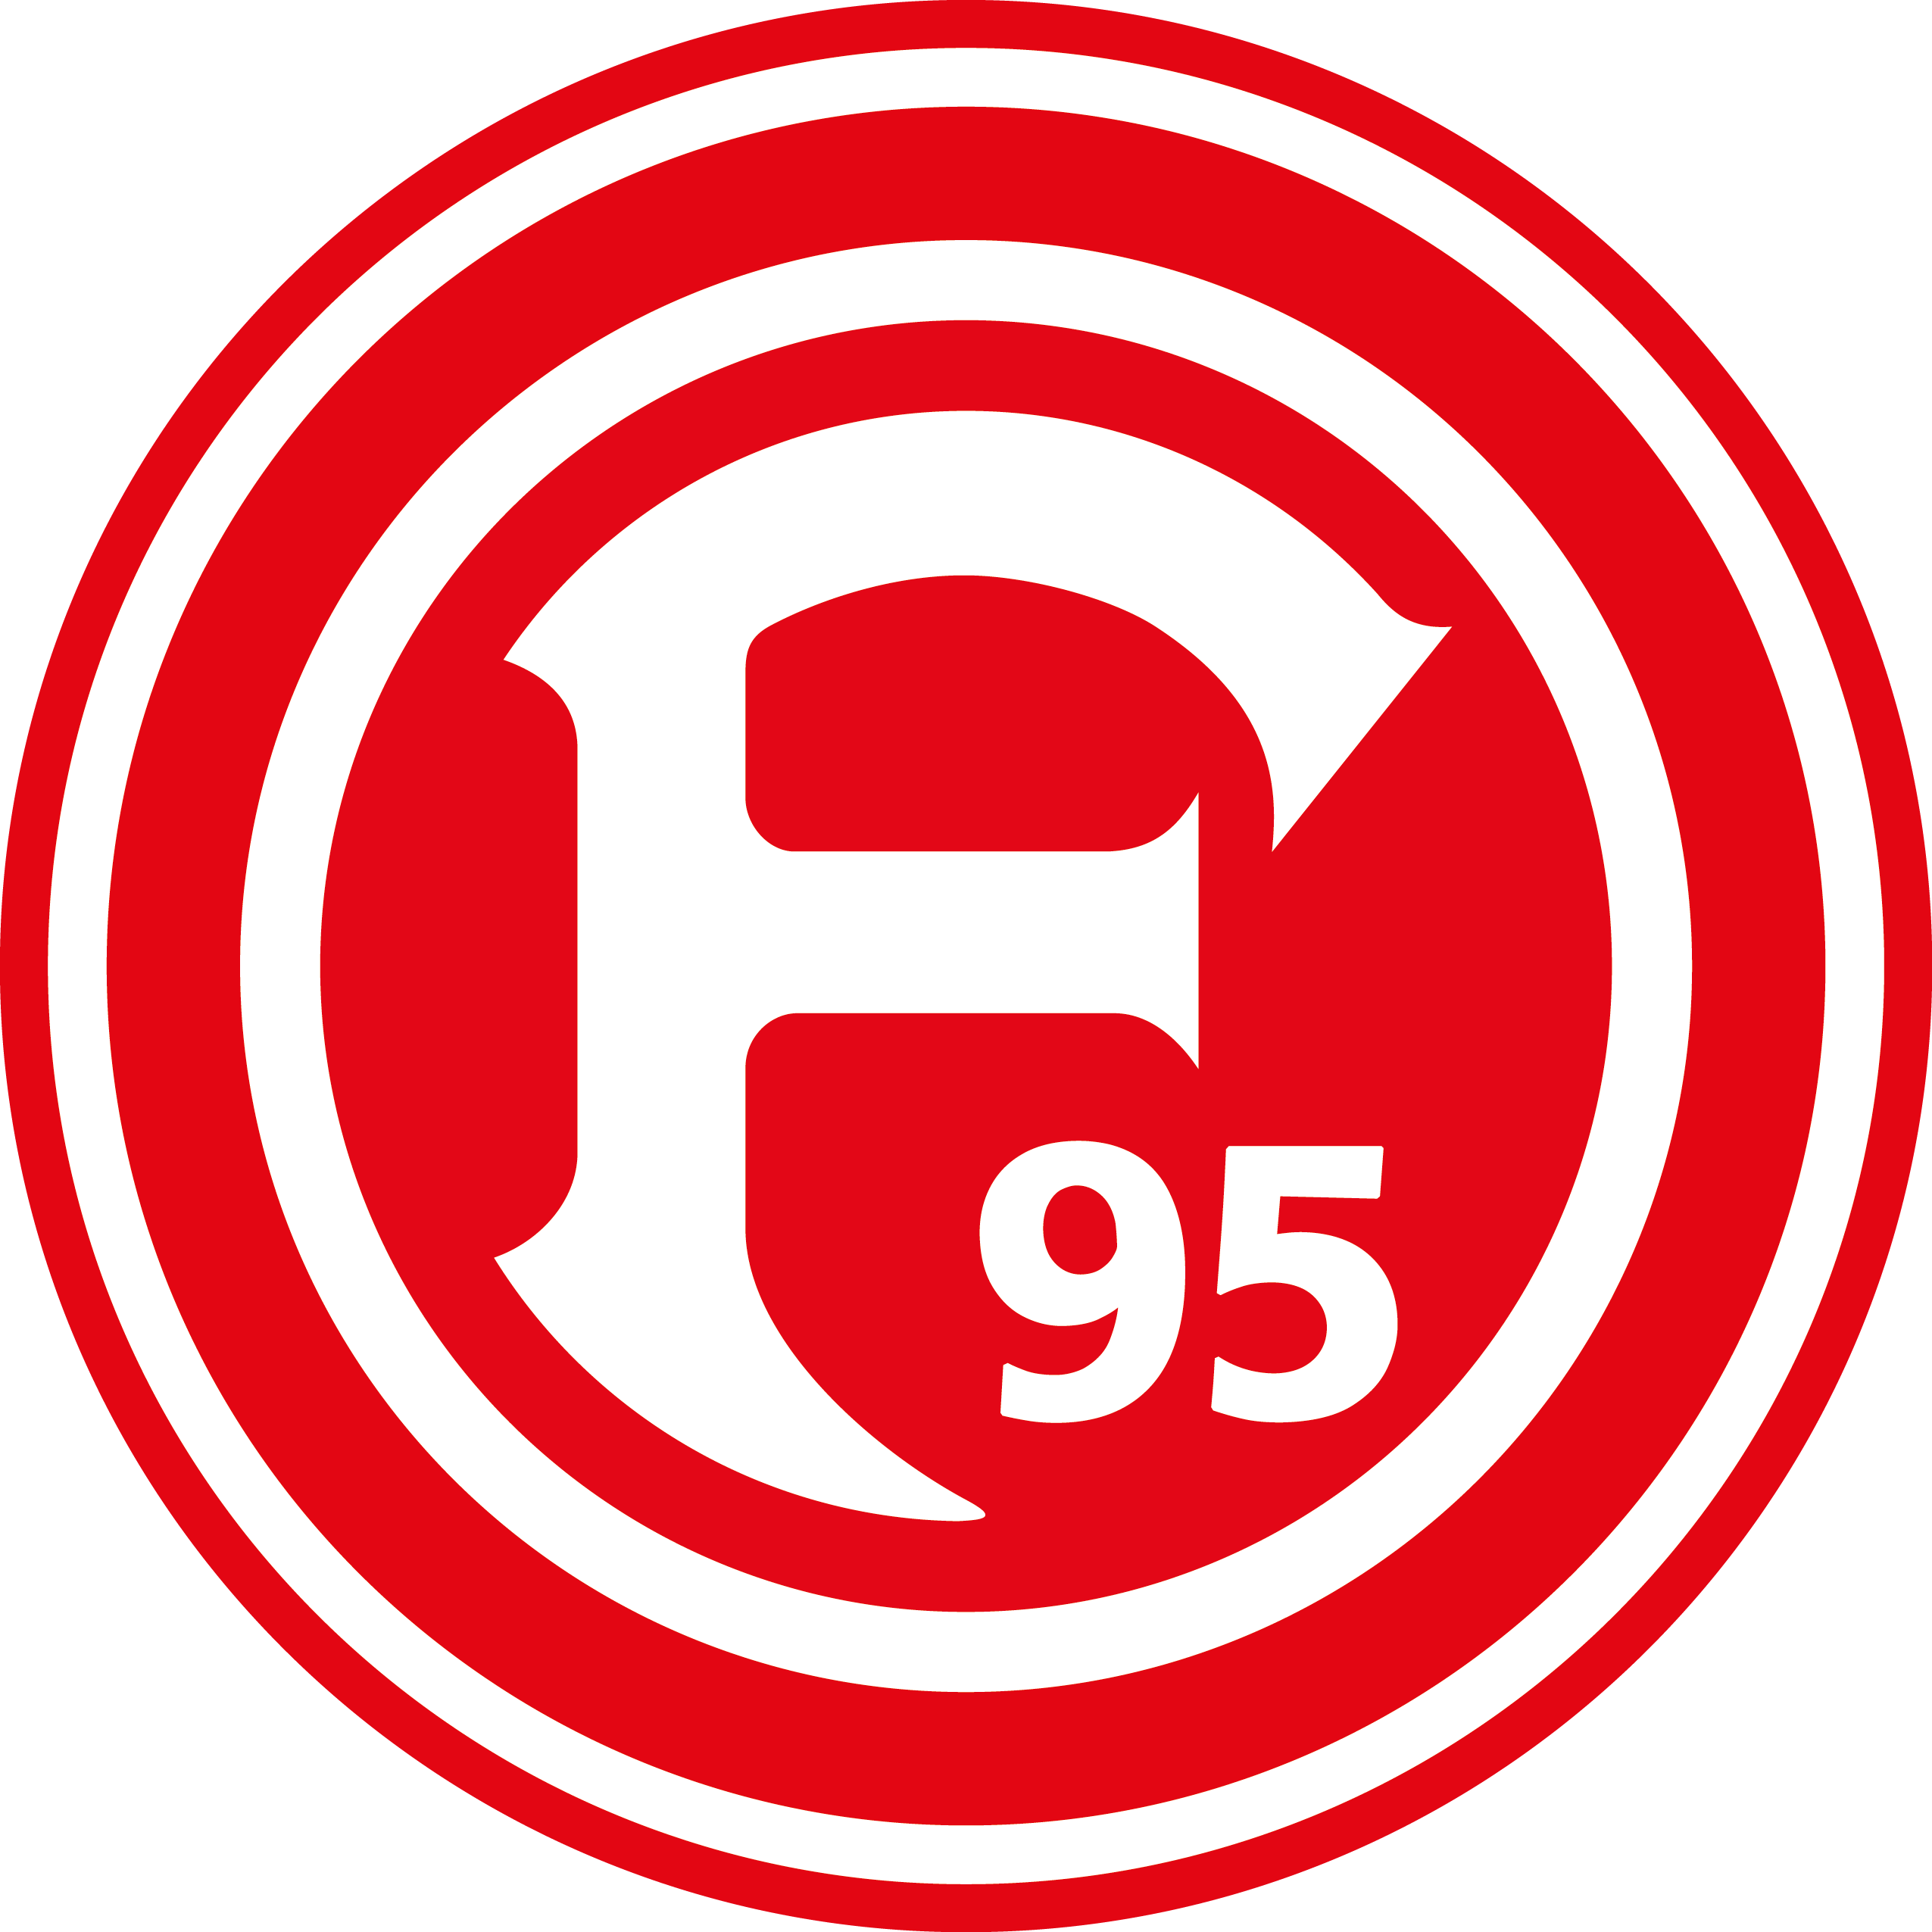 (c) F95.de